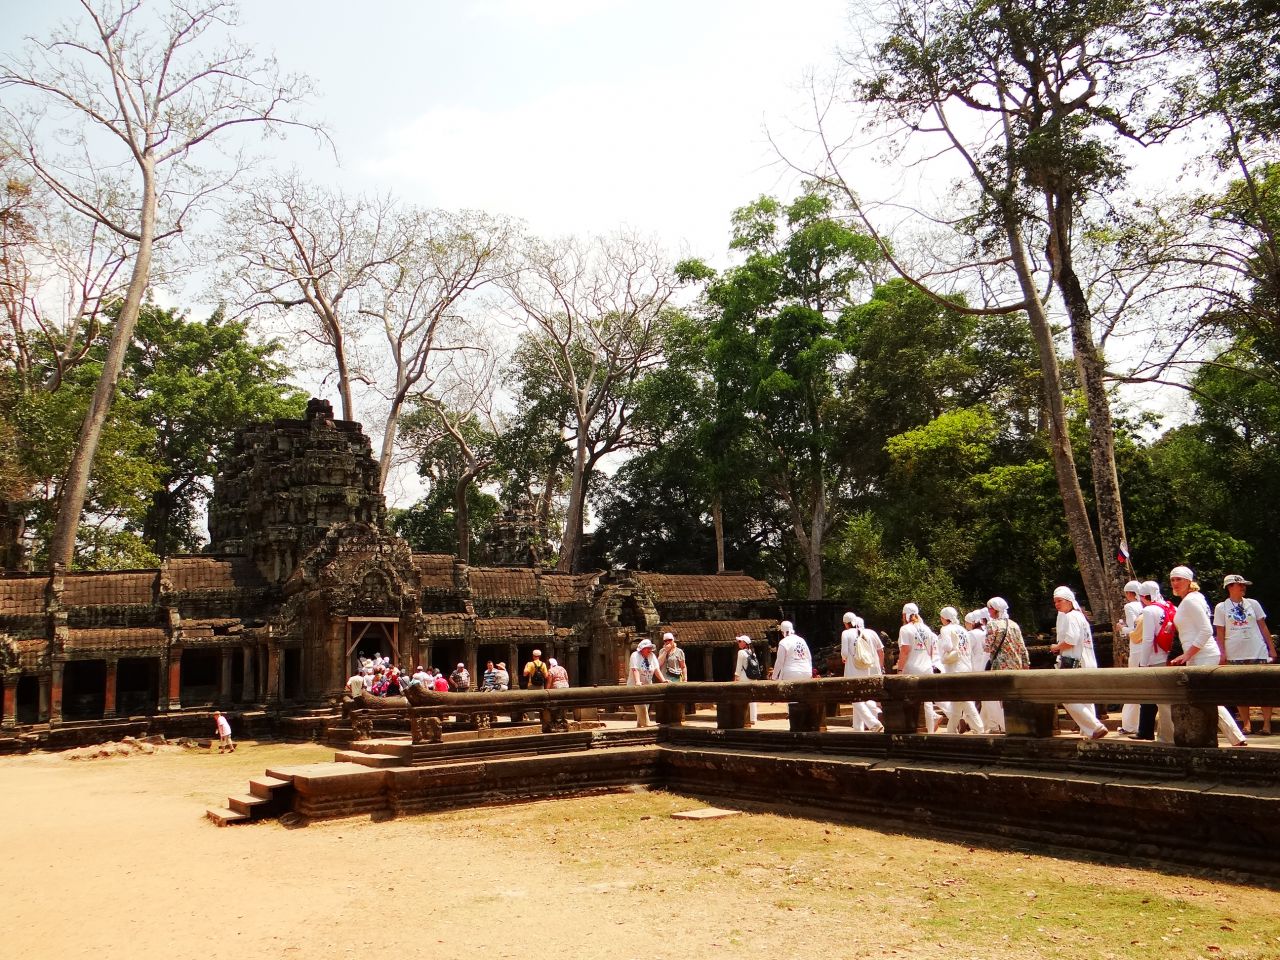 Храм Та Пром, как и Ангкор Ват, занимает большую территорию, но по архитектуре совершенно не похож на другие храмы Ангкора. Он состоит из цепочки одноэтажных длинных строений, соединенных между собой сквозными проходами и галереями. - Камбоджа, Лаос. Февраль 2014. Часть 2. Ангкор.